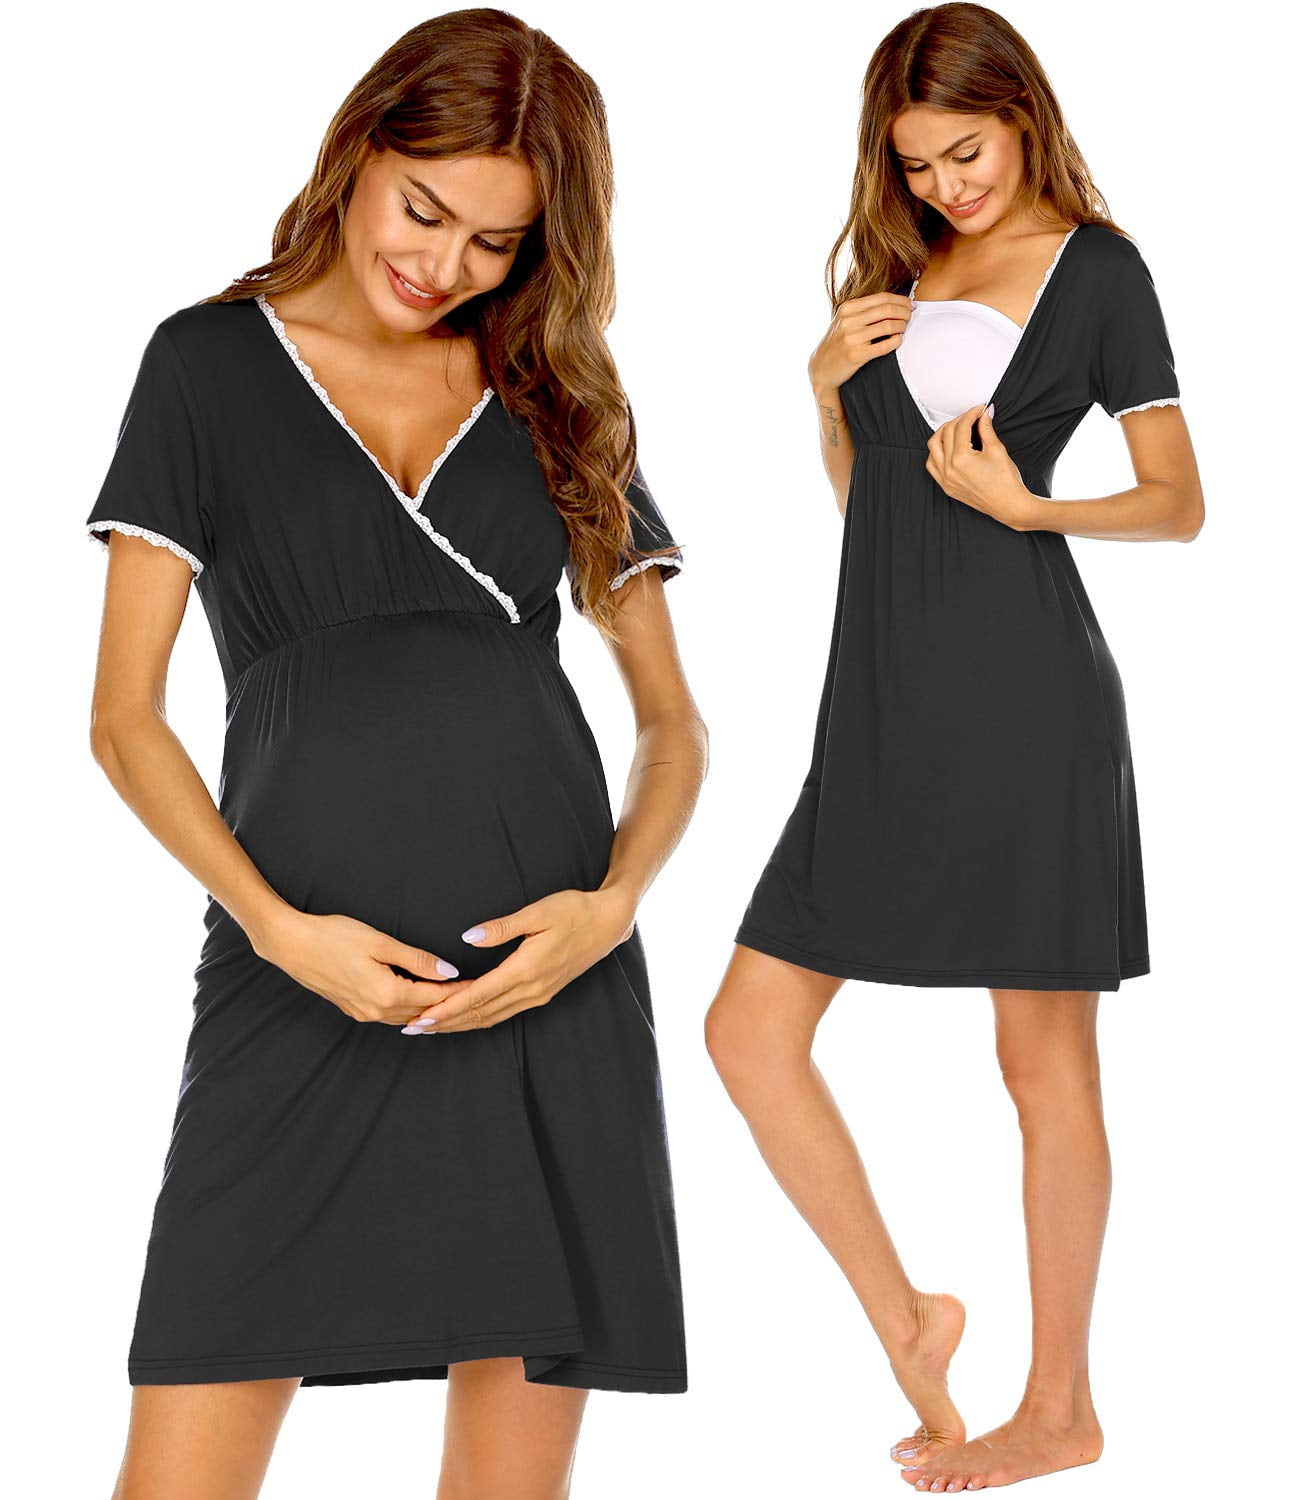 Joyspun Women's Maternity Nursing Chemise Dress, Sizes S to 3X